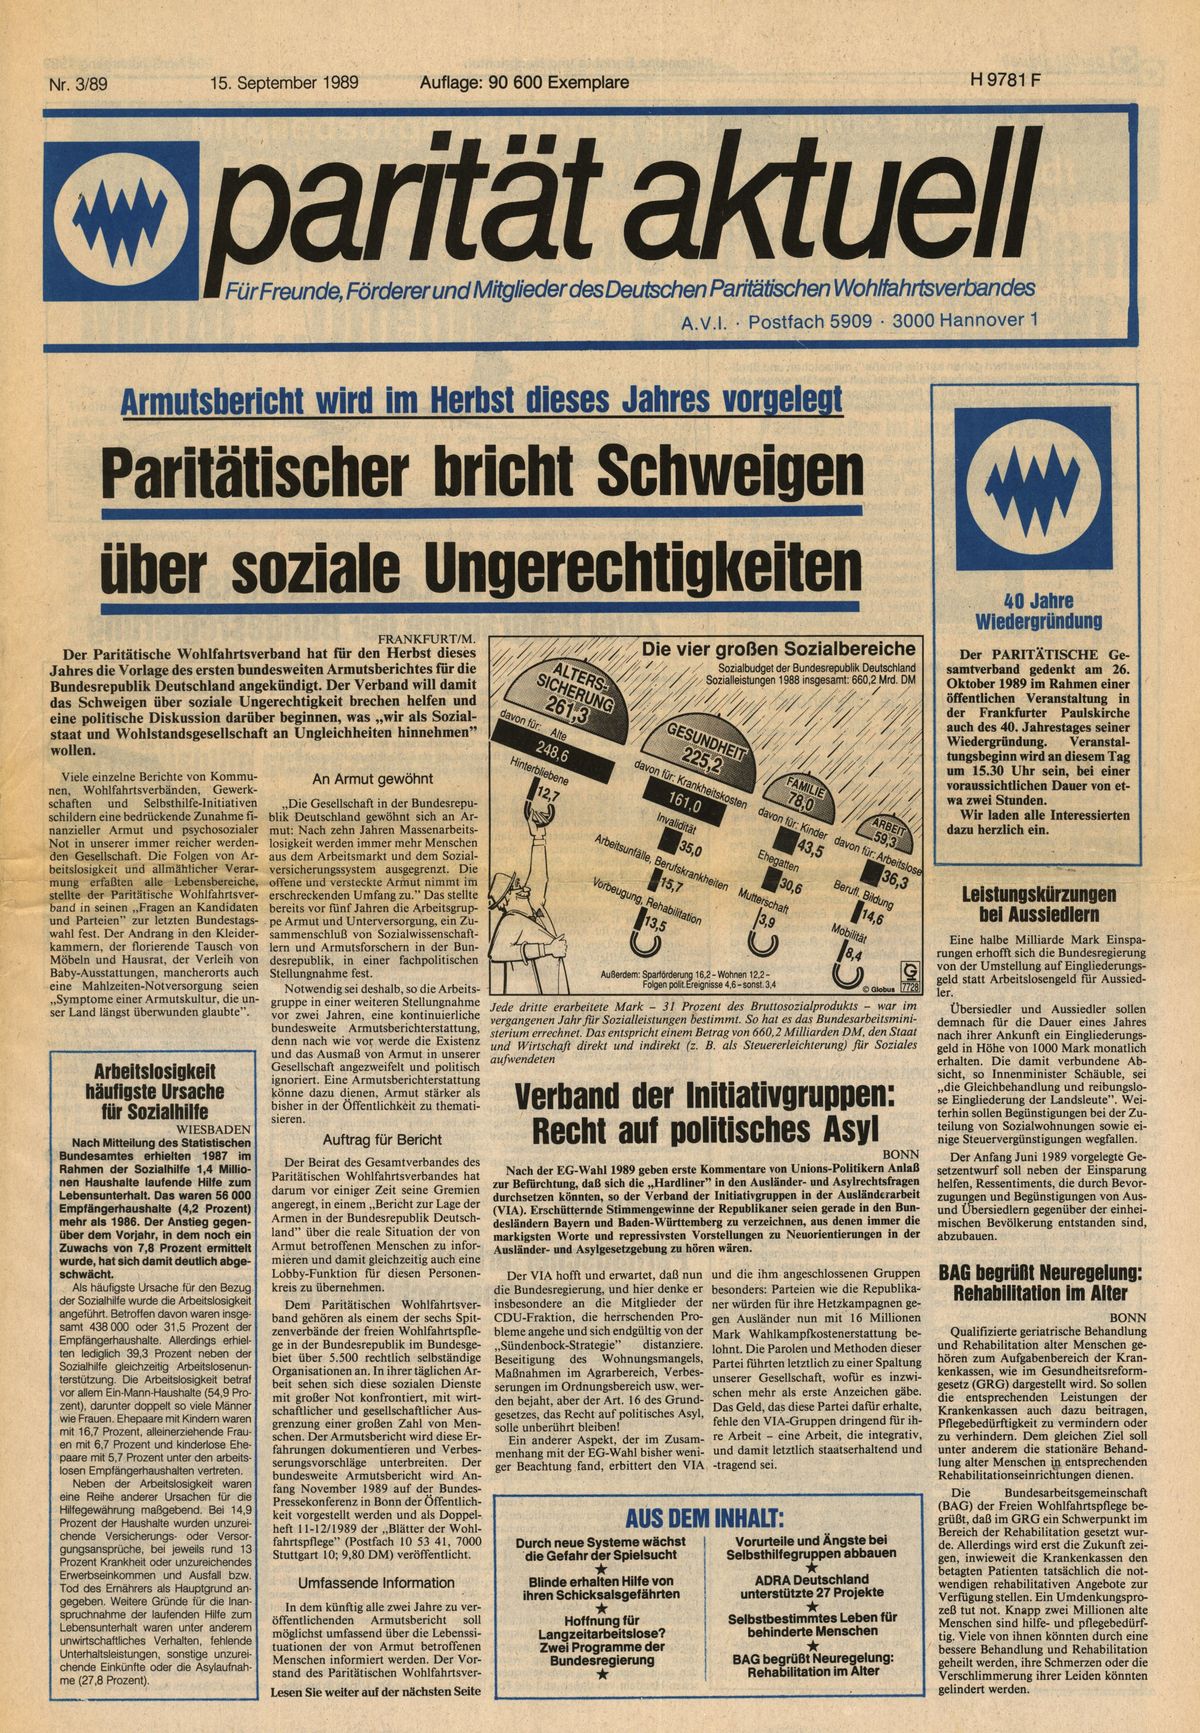 Titelseite des Magazins Parität Aktuell vom September 1989 mit der Schlagzeile "Armustbericht wird im Herbst dieses Jahres vorggelegt. Paritätischer bricht Schweigen über soziale Ungerechtigkeiten."